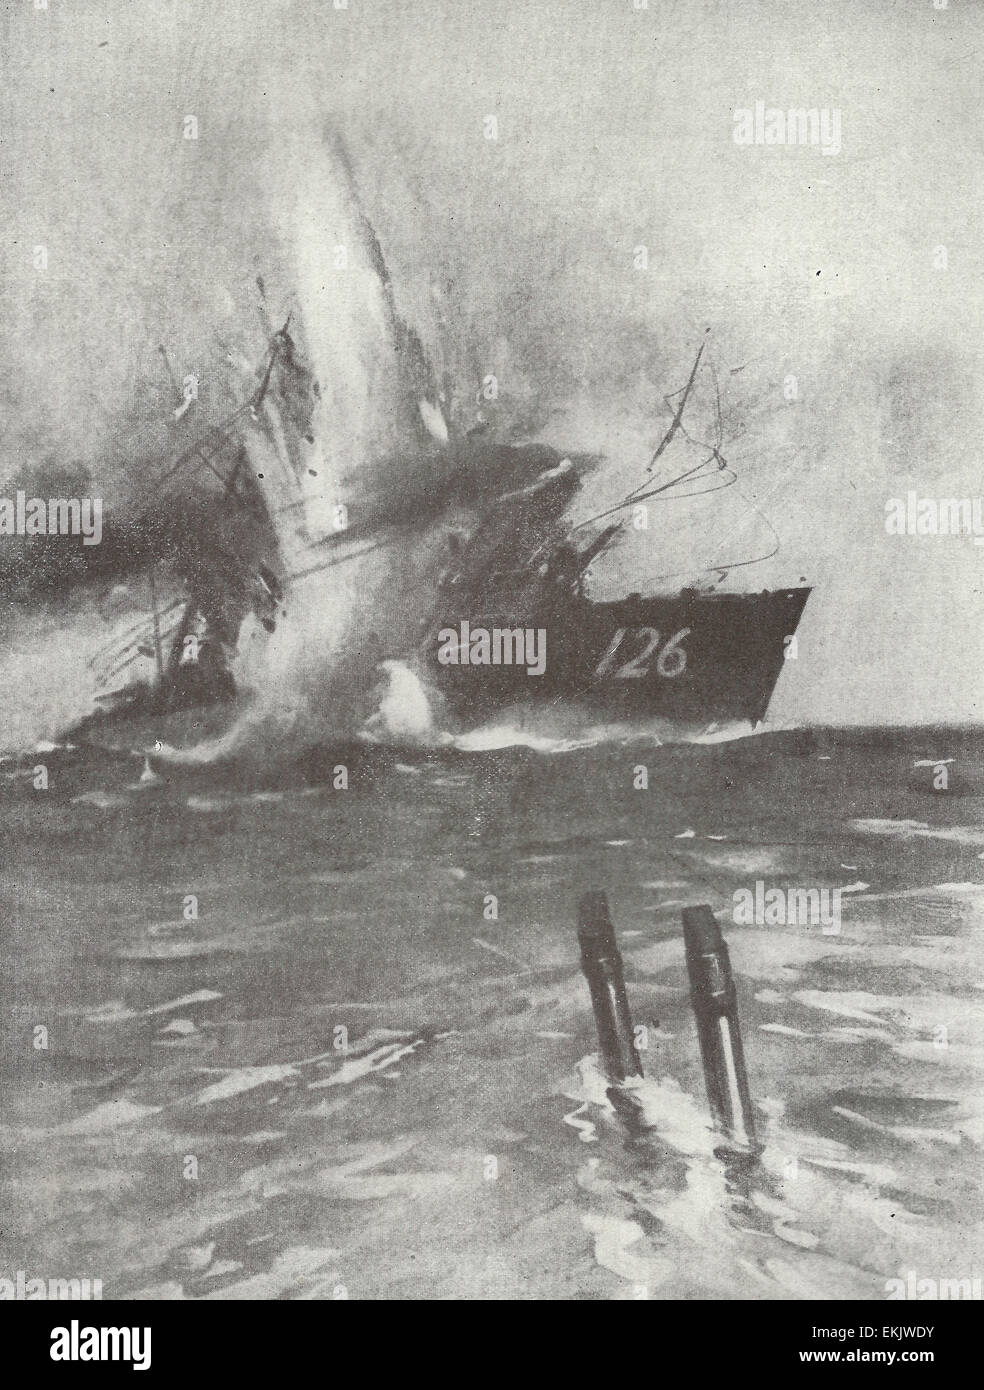 Die Zerstörung des deutschen Zerstörers S-126 durch den englischen u-Boot e-9 im ersten Weltkrieg Stockfoto